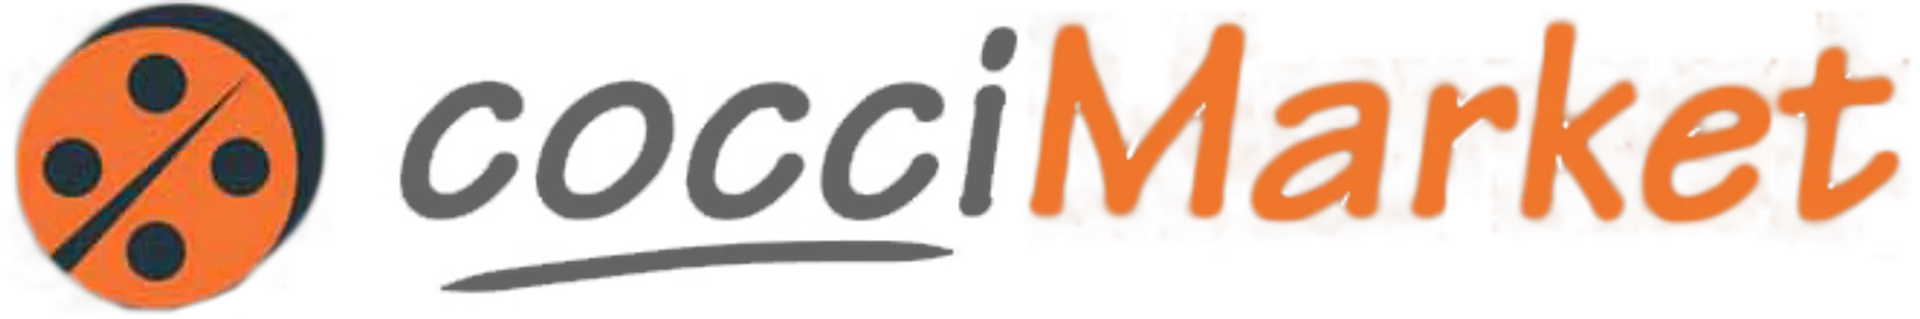 COCCIMARKET logo